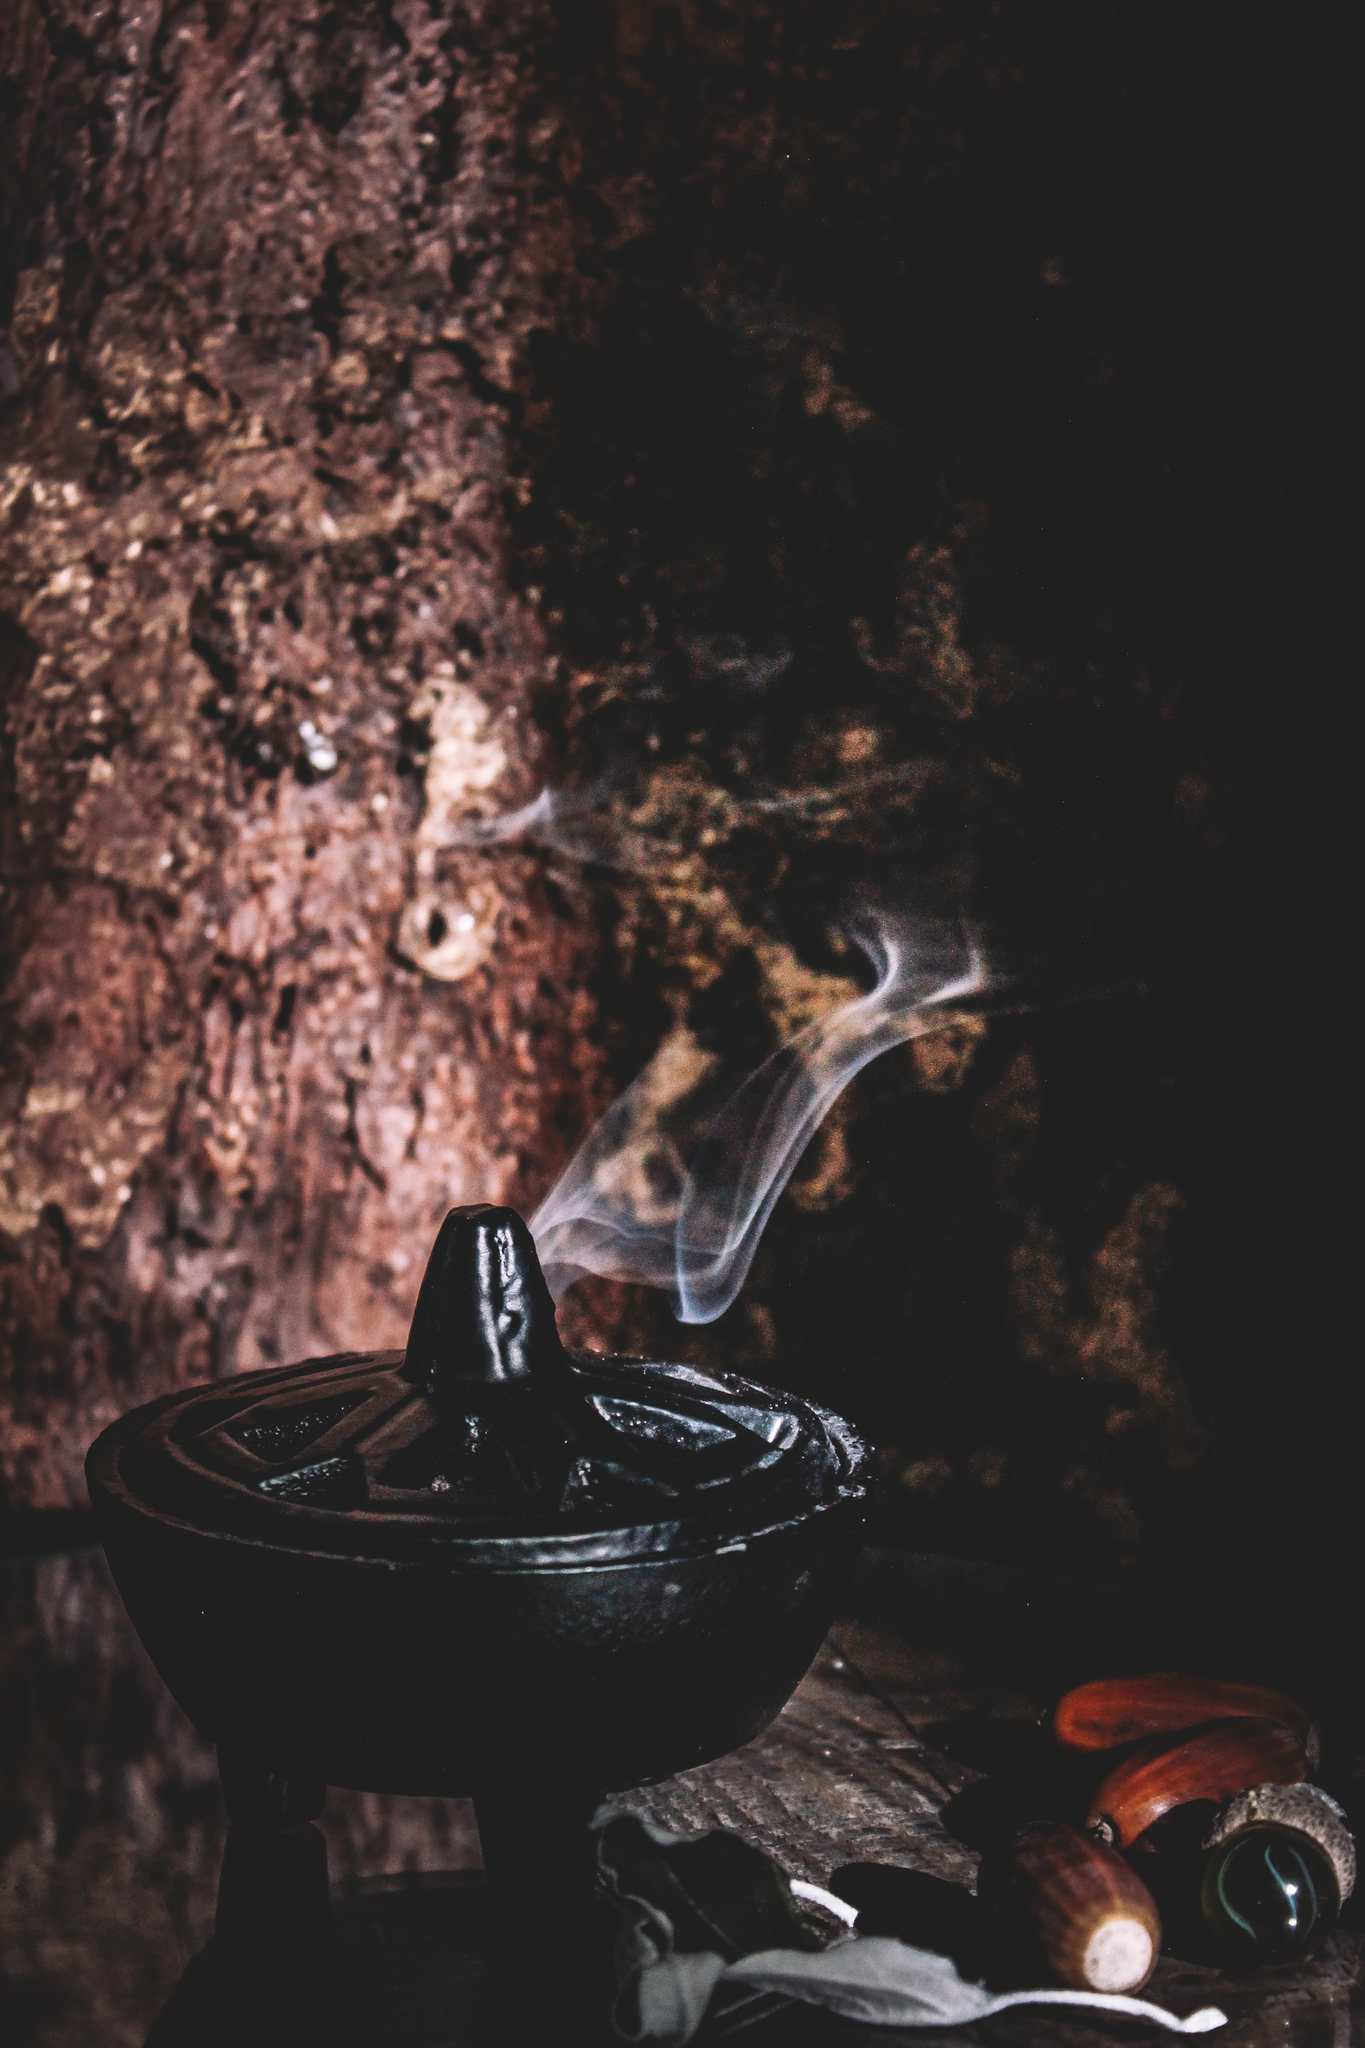 Räucherstäbchenhalter, der sanft Rauch freisetzt, vor dem Hintergrund einer rustikalen Holzoberfläche, umgeben von Eicheln und einer kleinen Flasche.